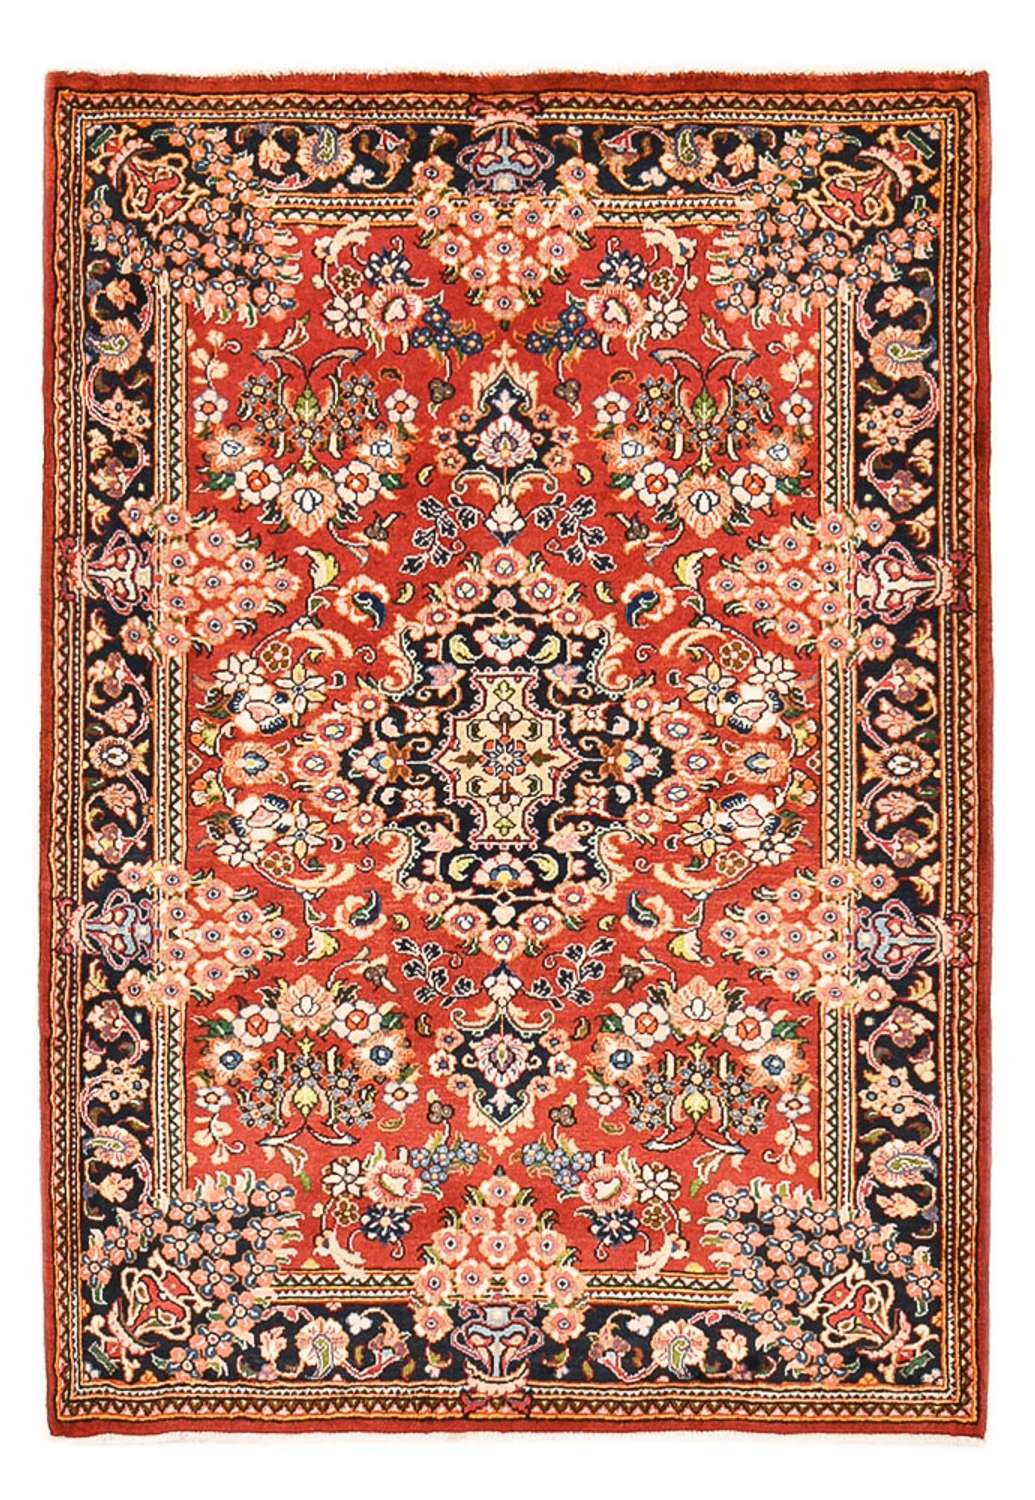 Dywan perski - Keshan - 146 x 102 cm - czerwony